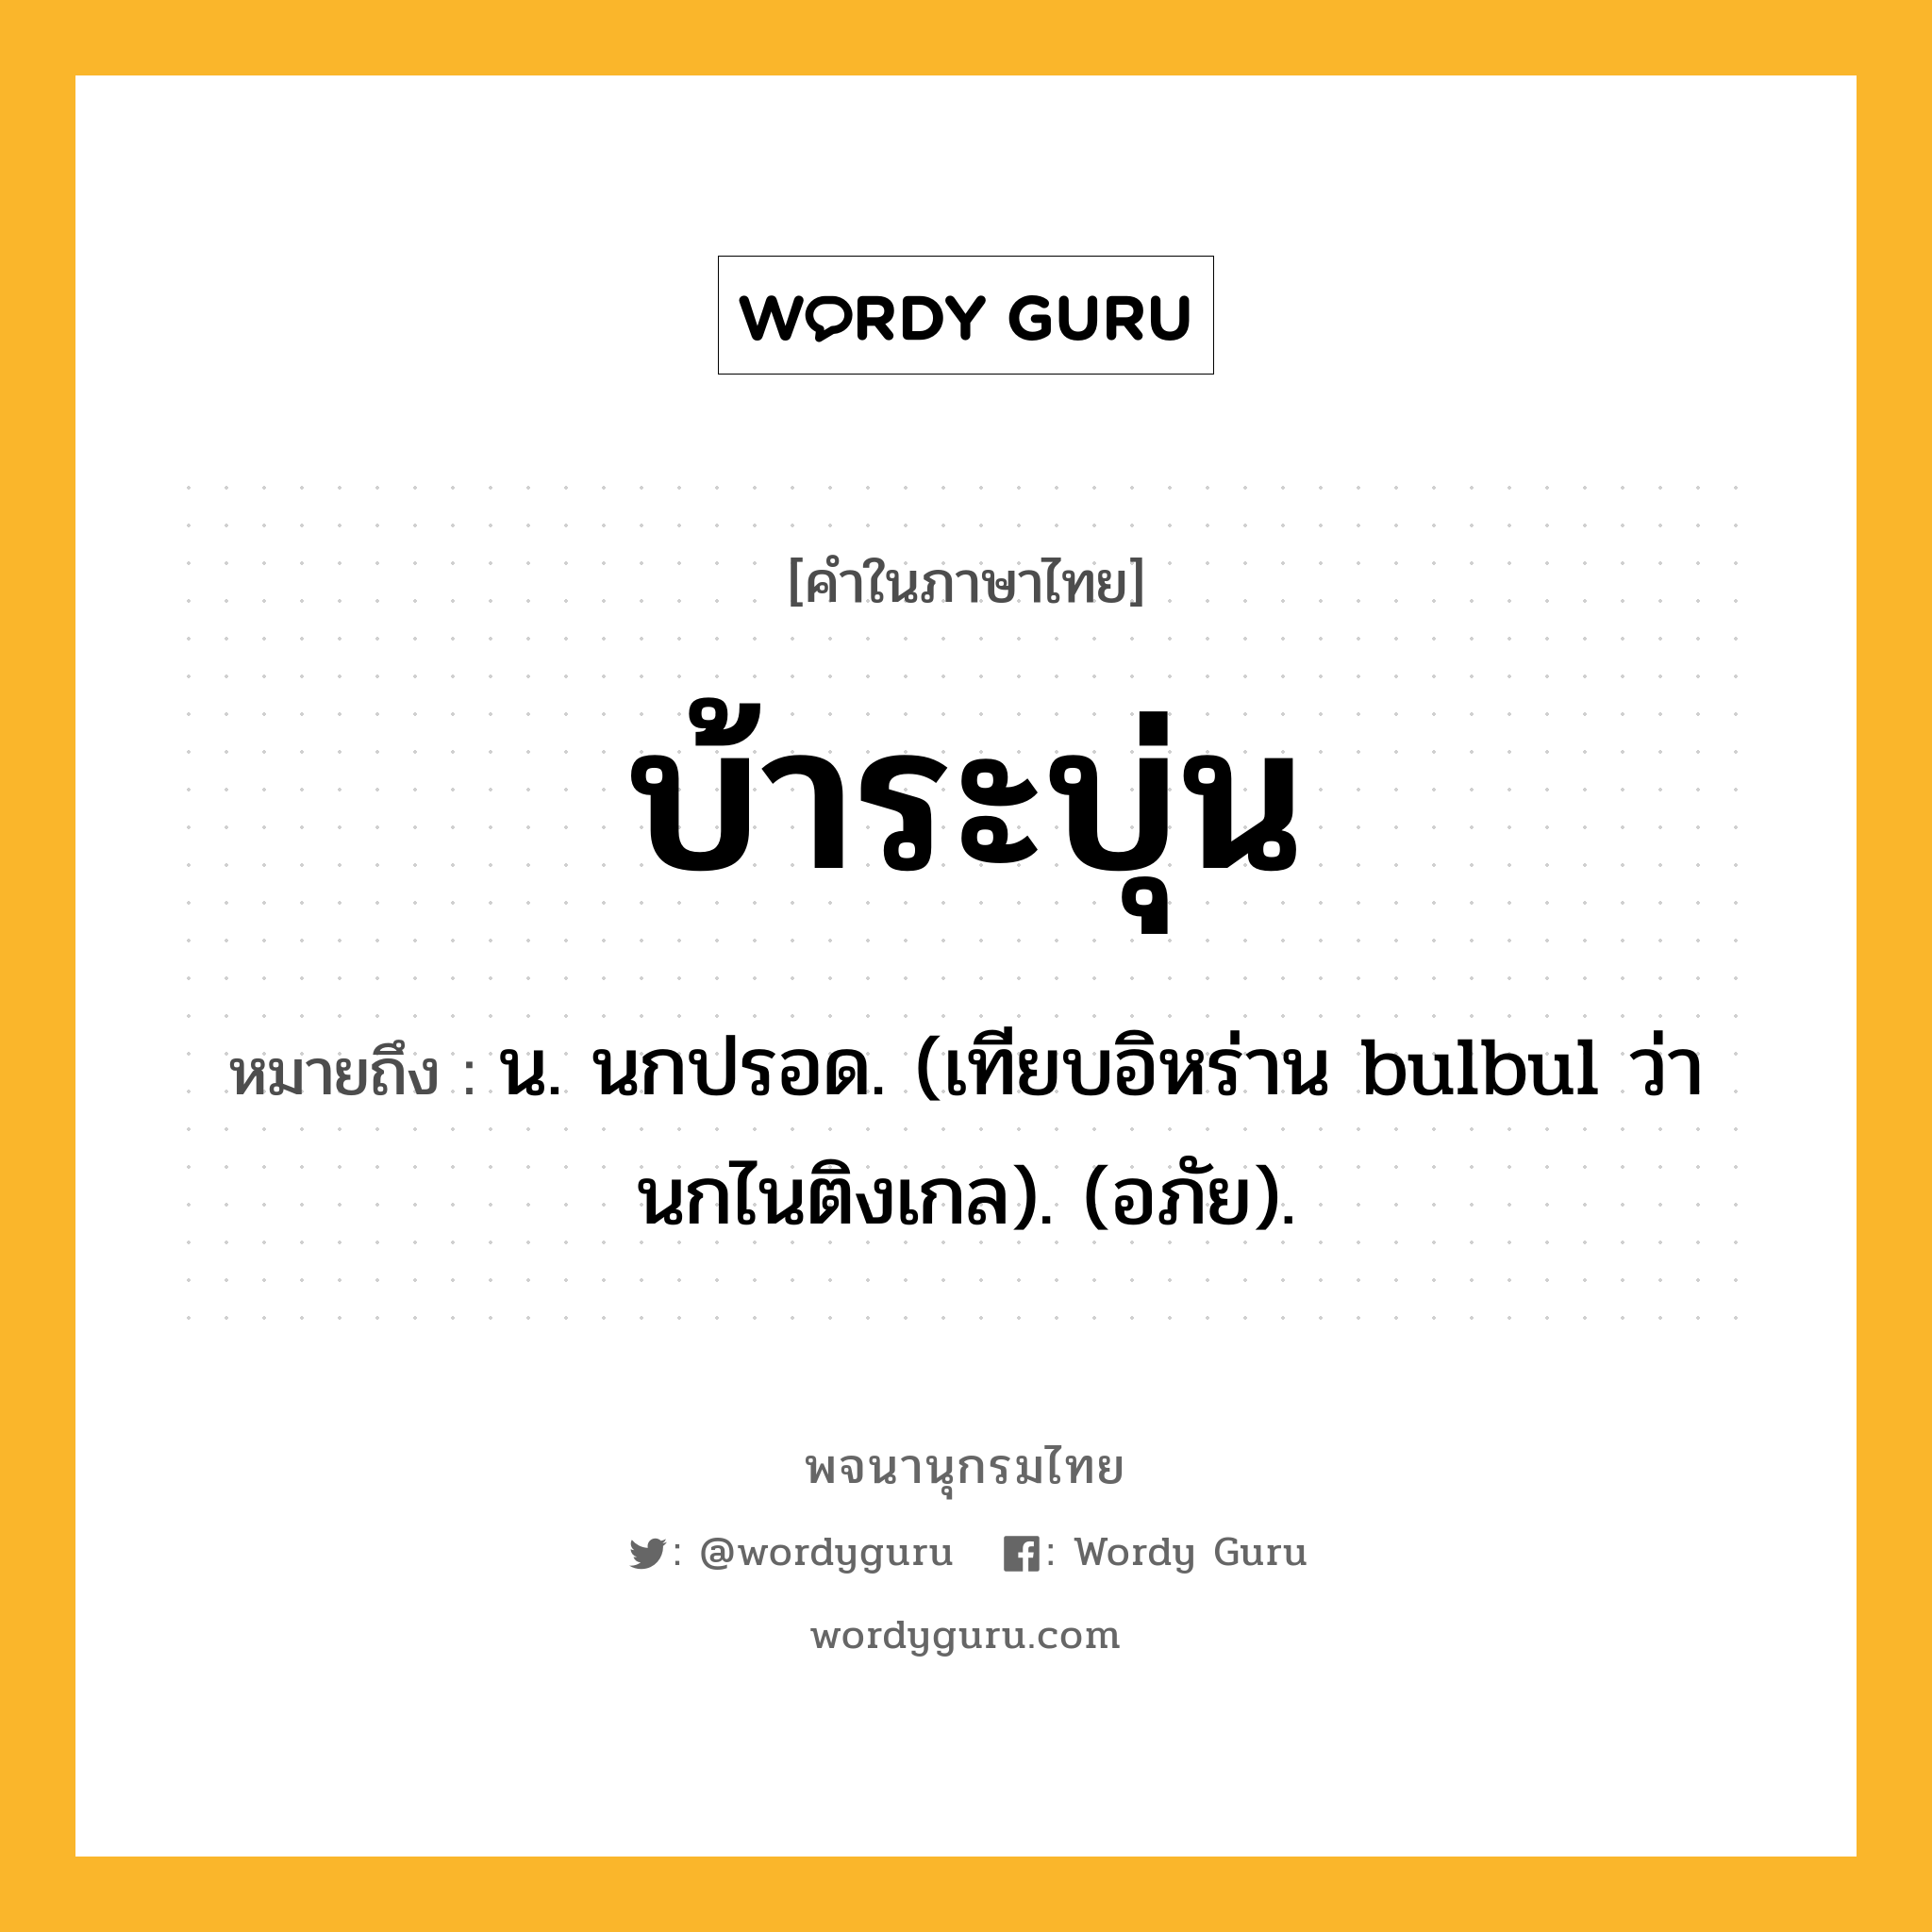 บ้าระบุ่น ความหมาย หมายถึงอะไร?, คำในภาษาไทย บ้าระบุ่น หมายถึง น. นกปรอด. (เทียบอิหร่าน bulbul ว่า นกไนติงเกล). (อภัย).